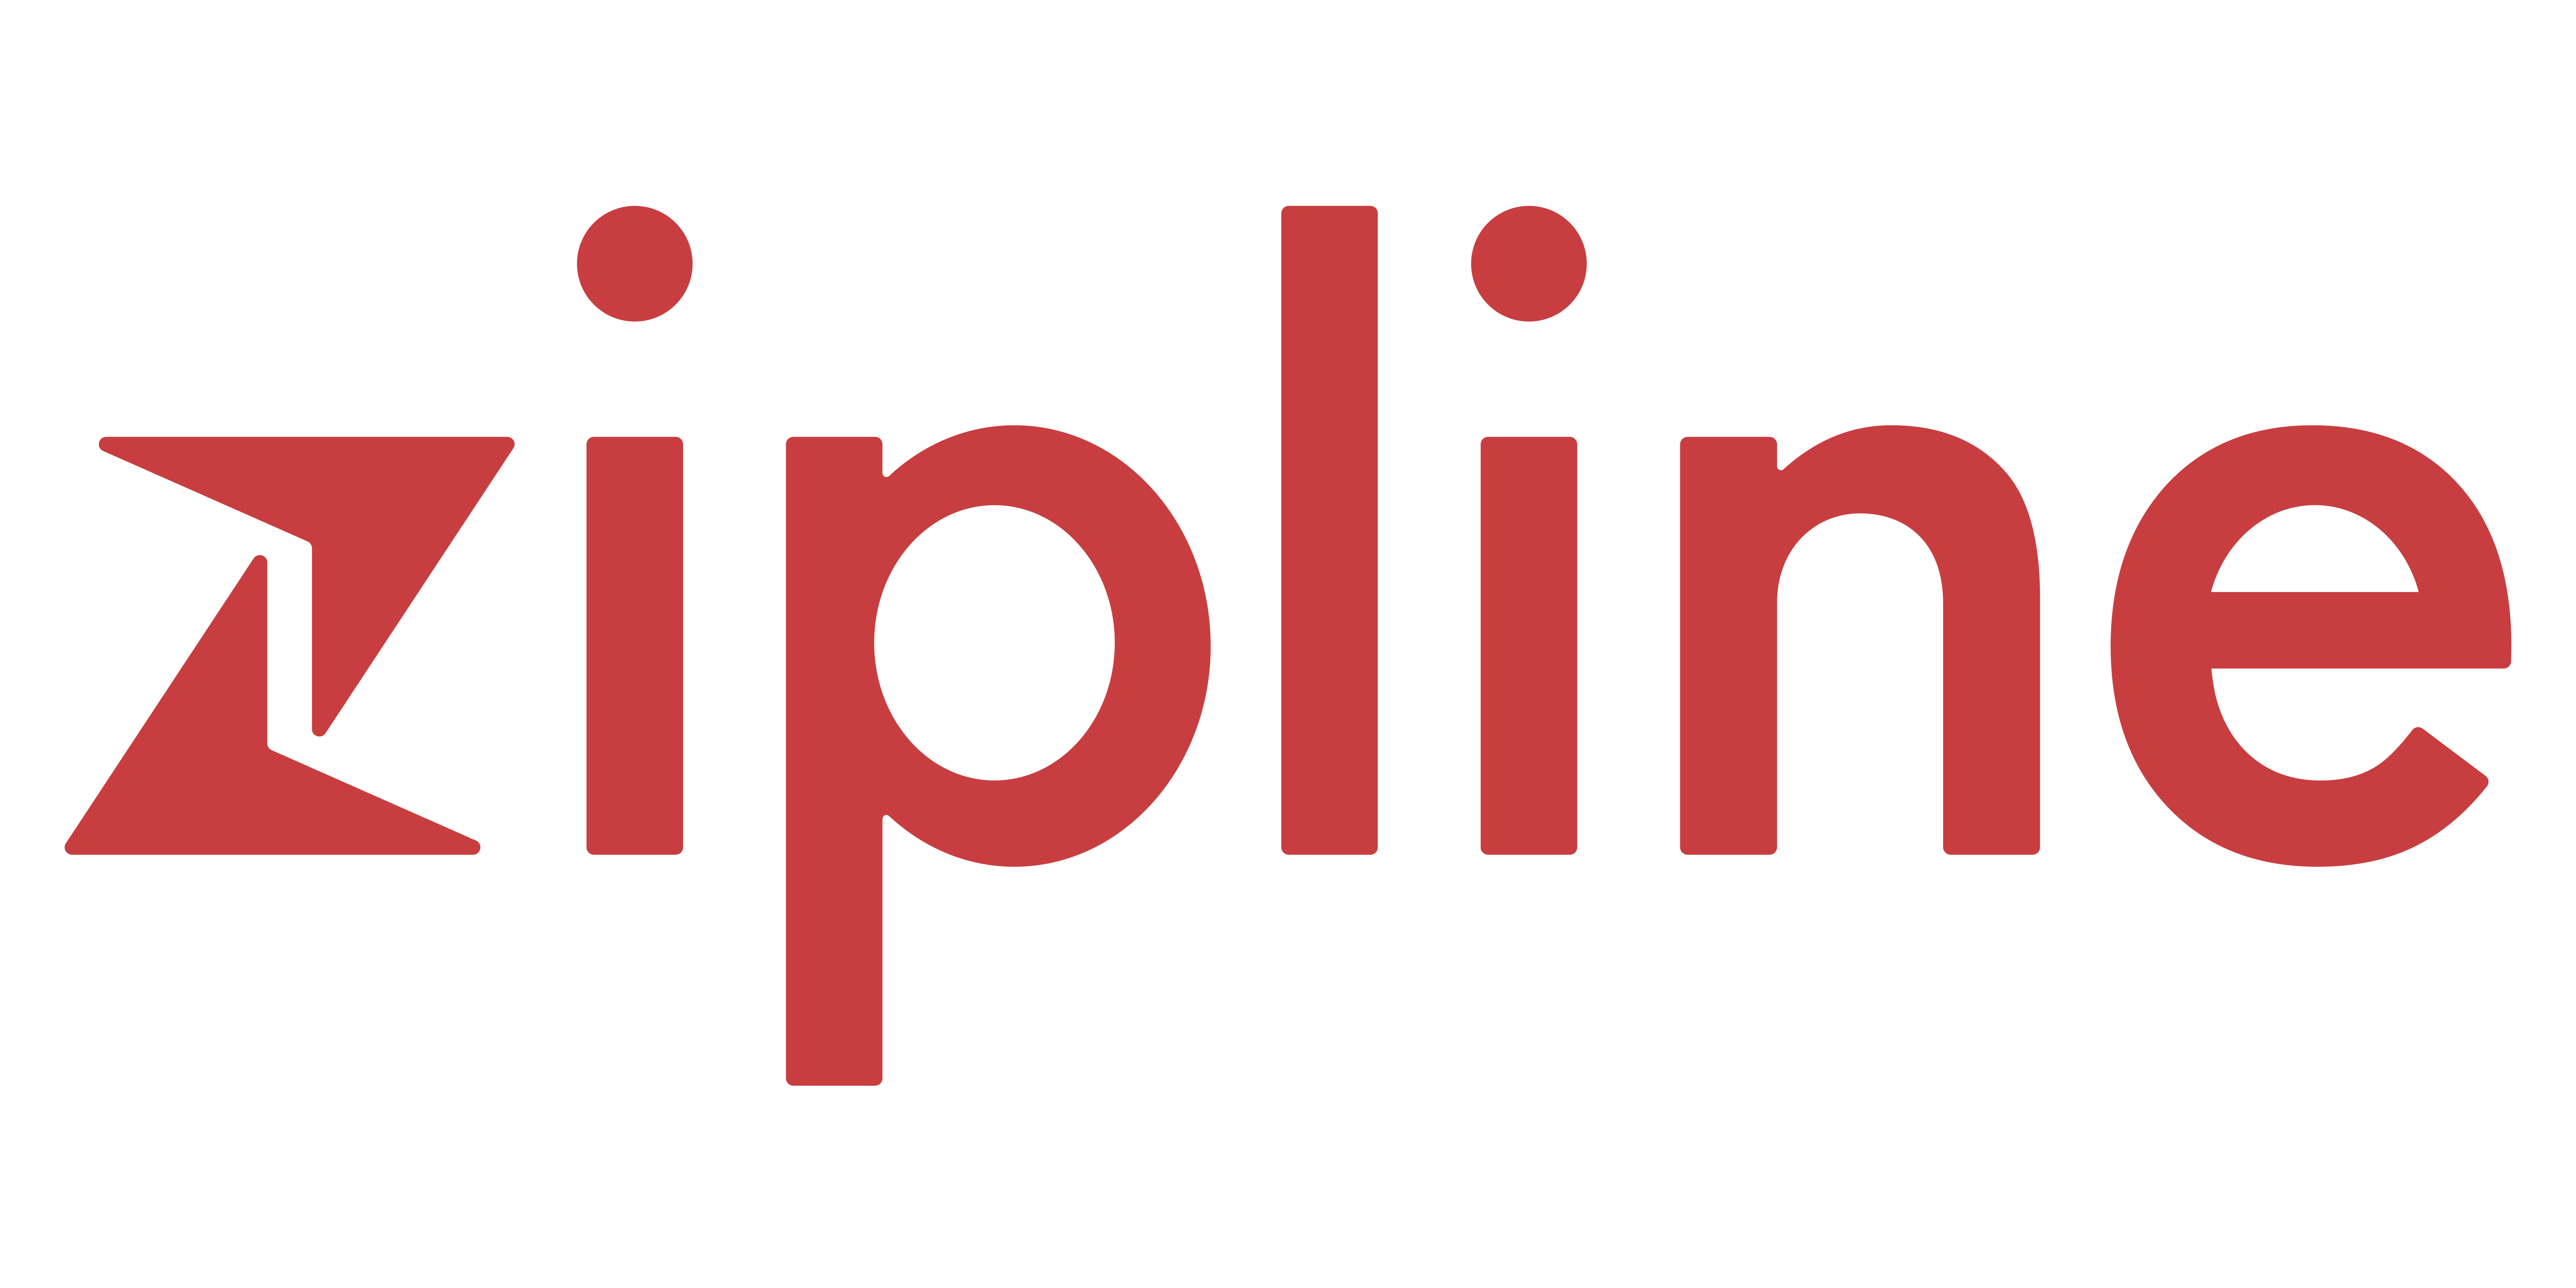 Write/Speak/Code sponsor Zipline logo